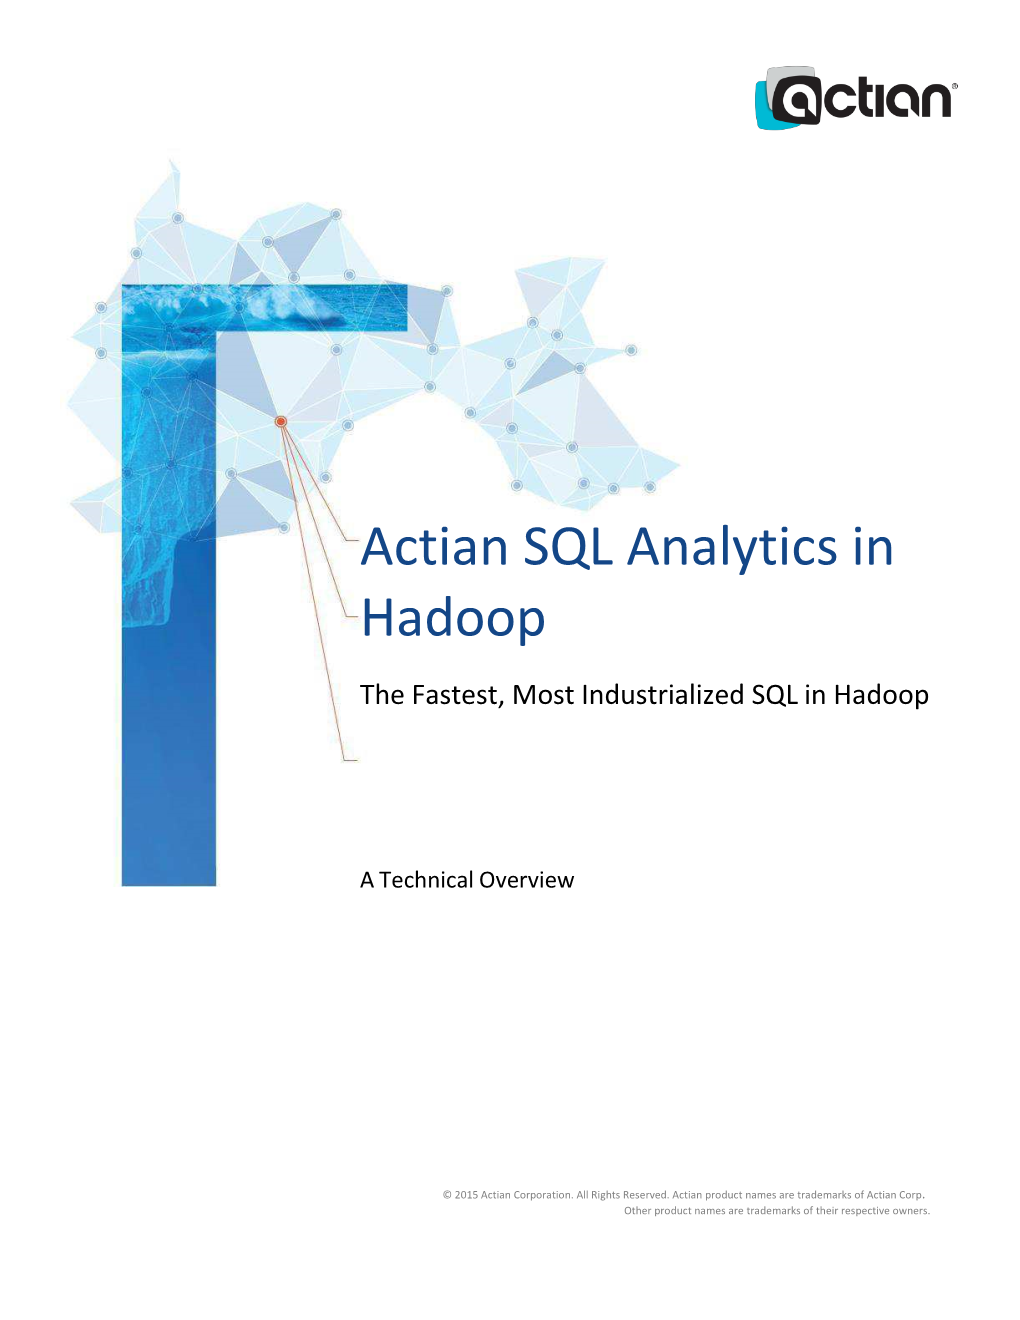 Actian SQL Analytics in Hadoop